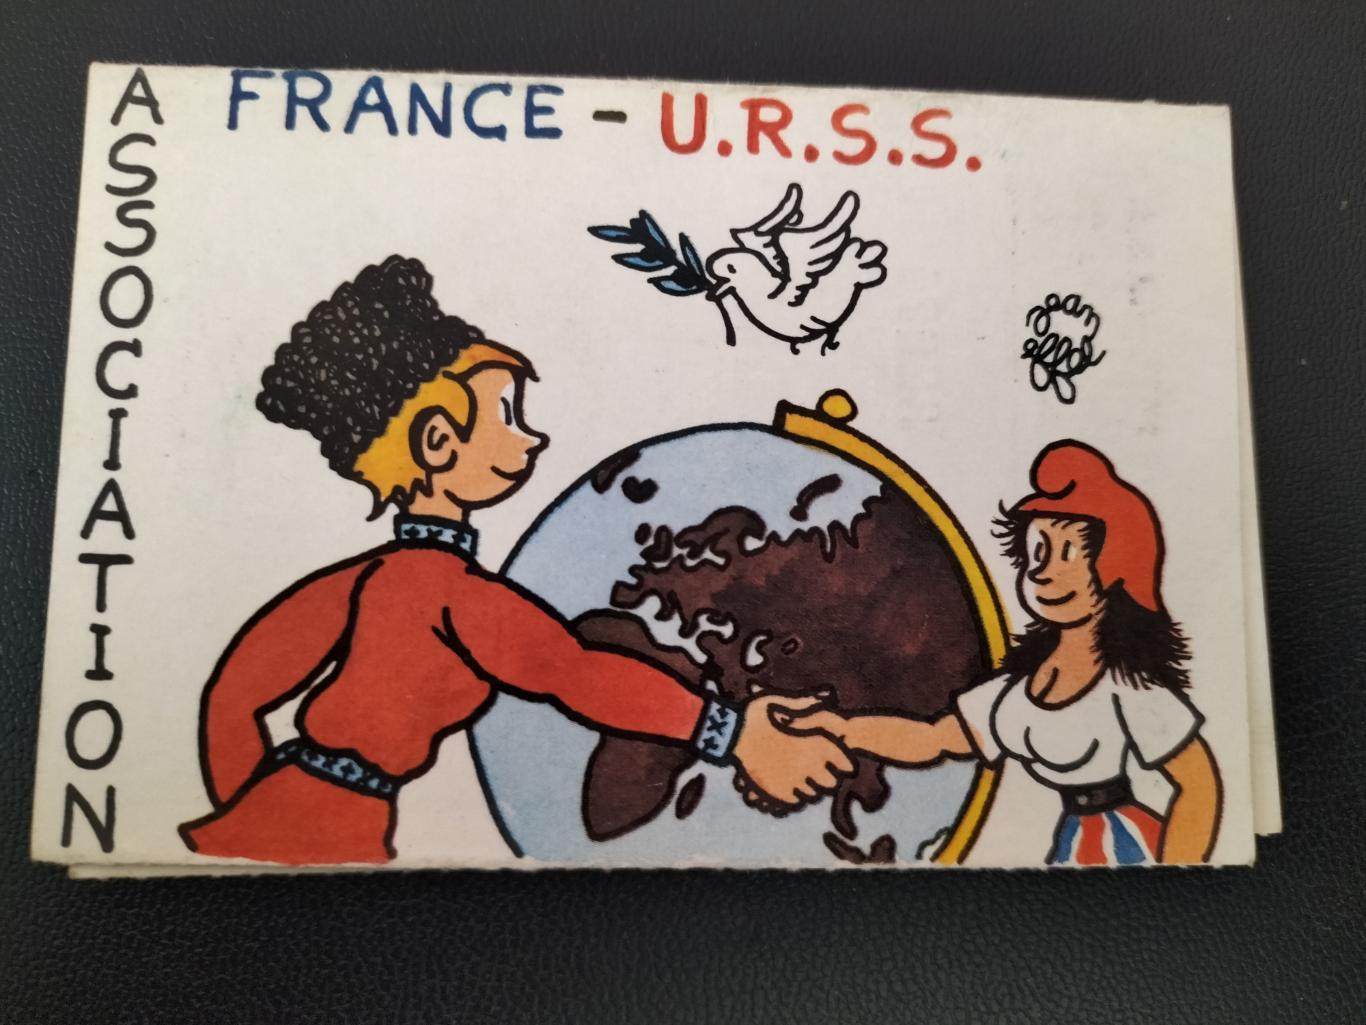 Association France USSR